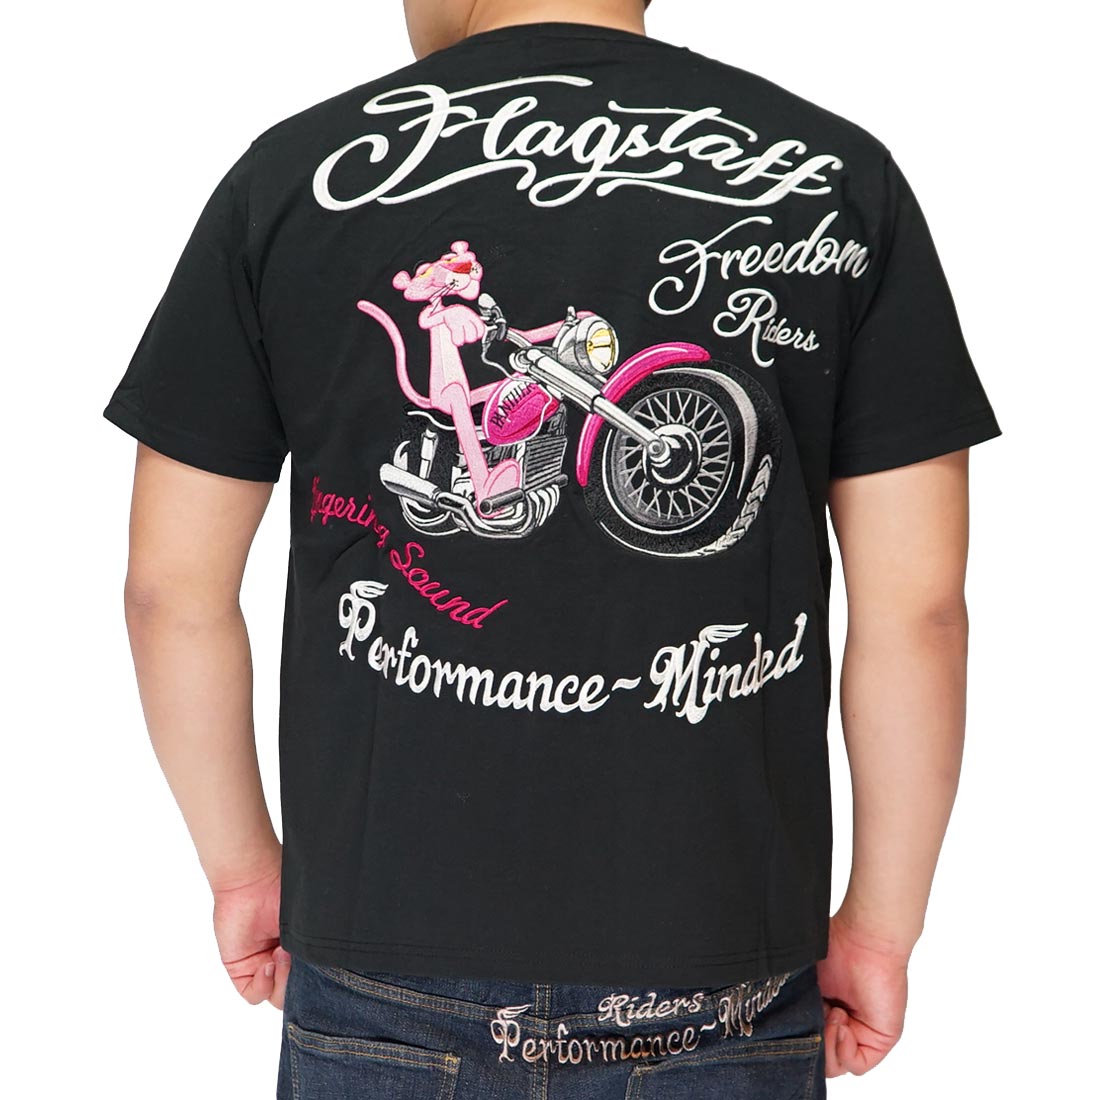 フラッグスタッフ FLAGSTAFF ピンクパンサー コラボ Tシャツ 半袖 刺繍 メンズ バイク ...